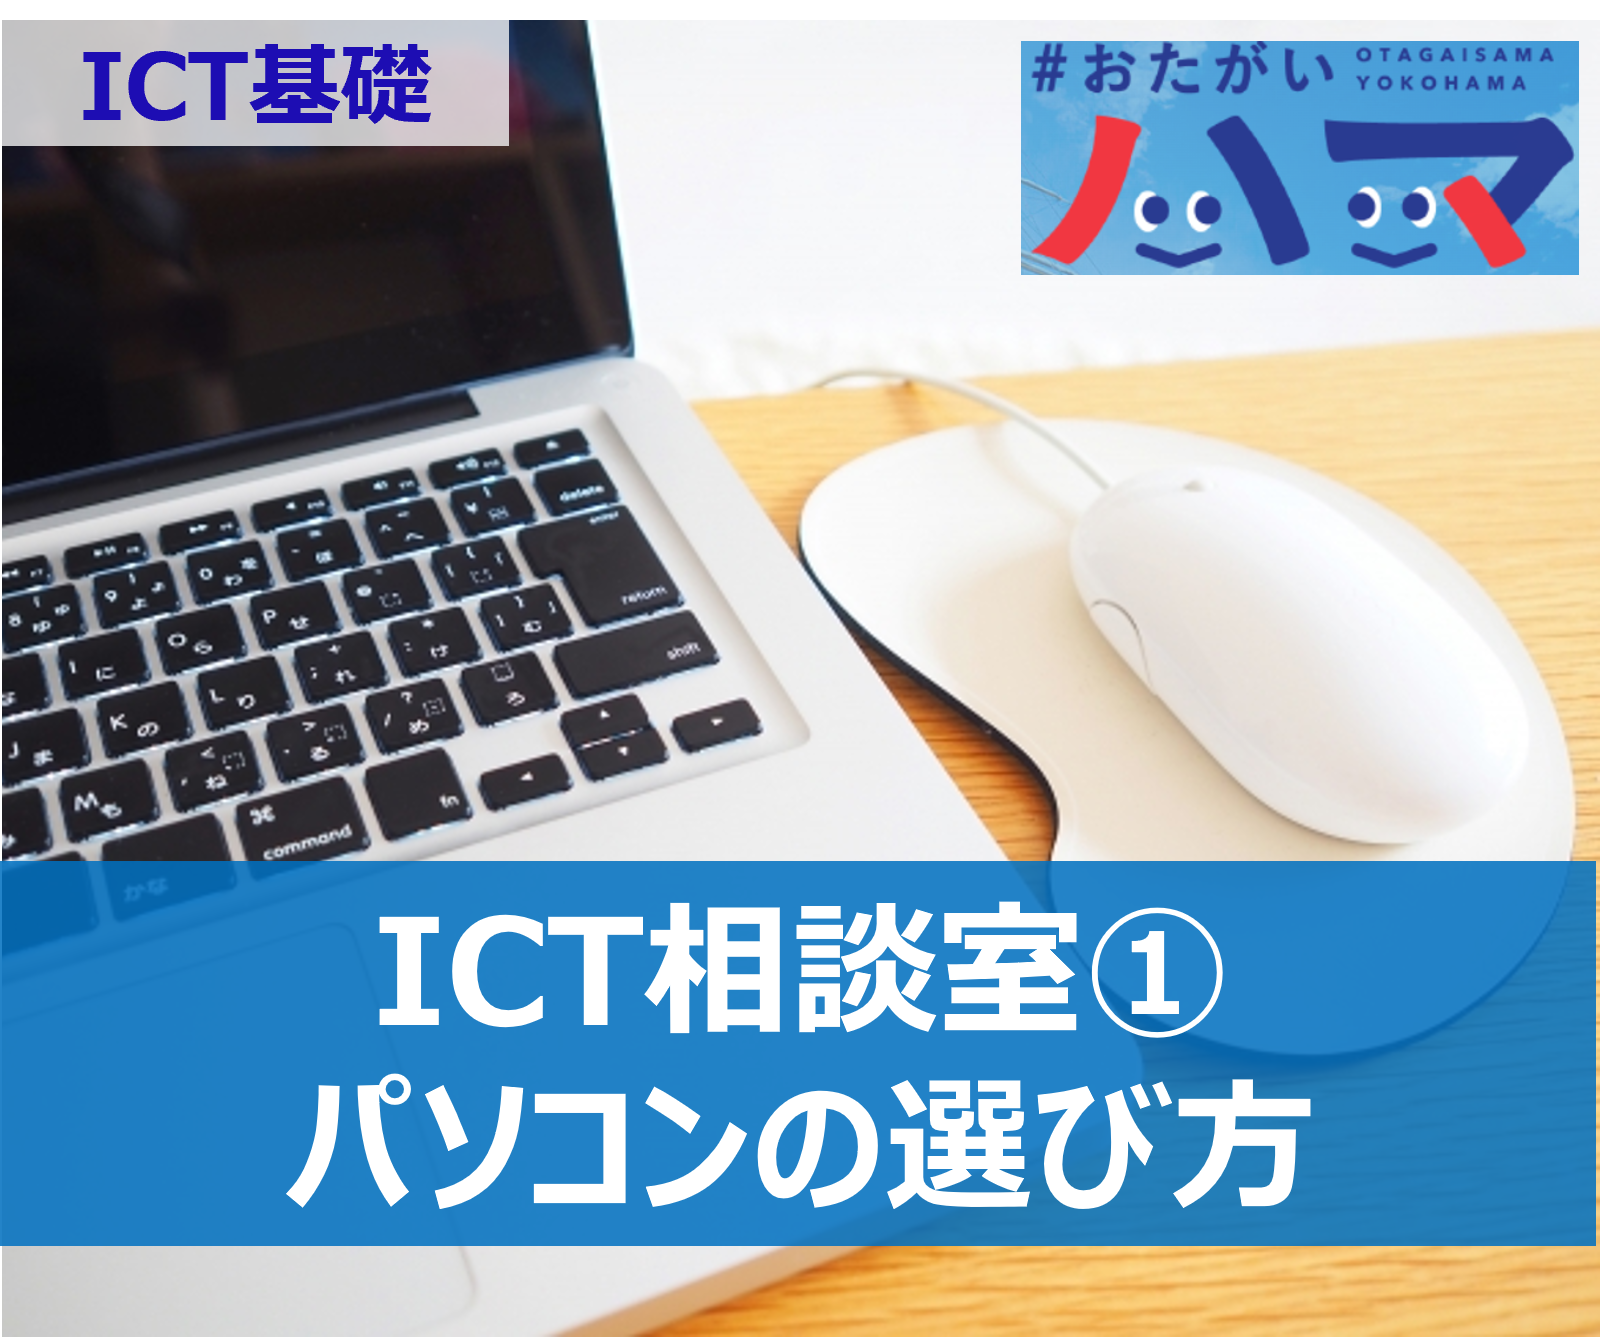 【ICT基礎】ICT相談室①　「パソコンの選び方」など ITを使ったコミュニケーション